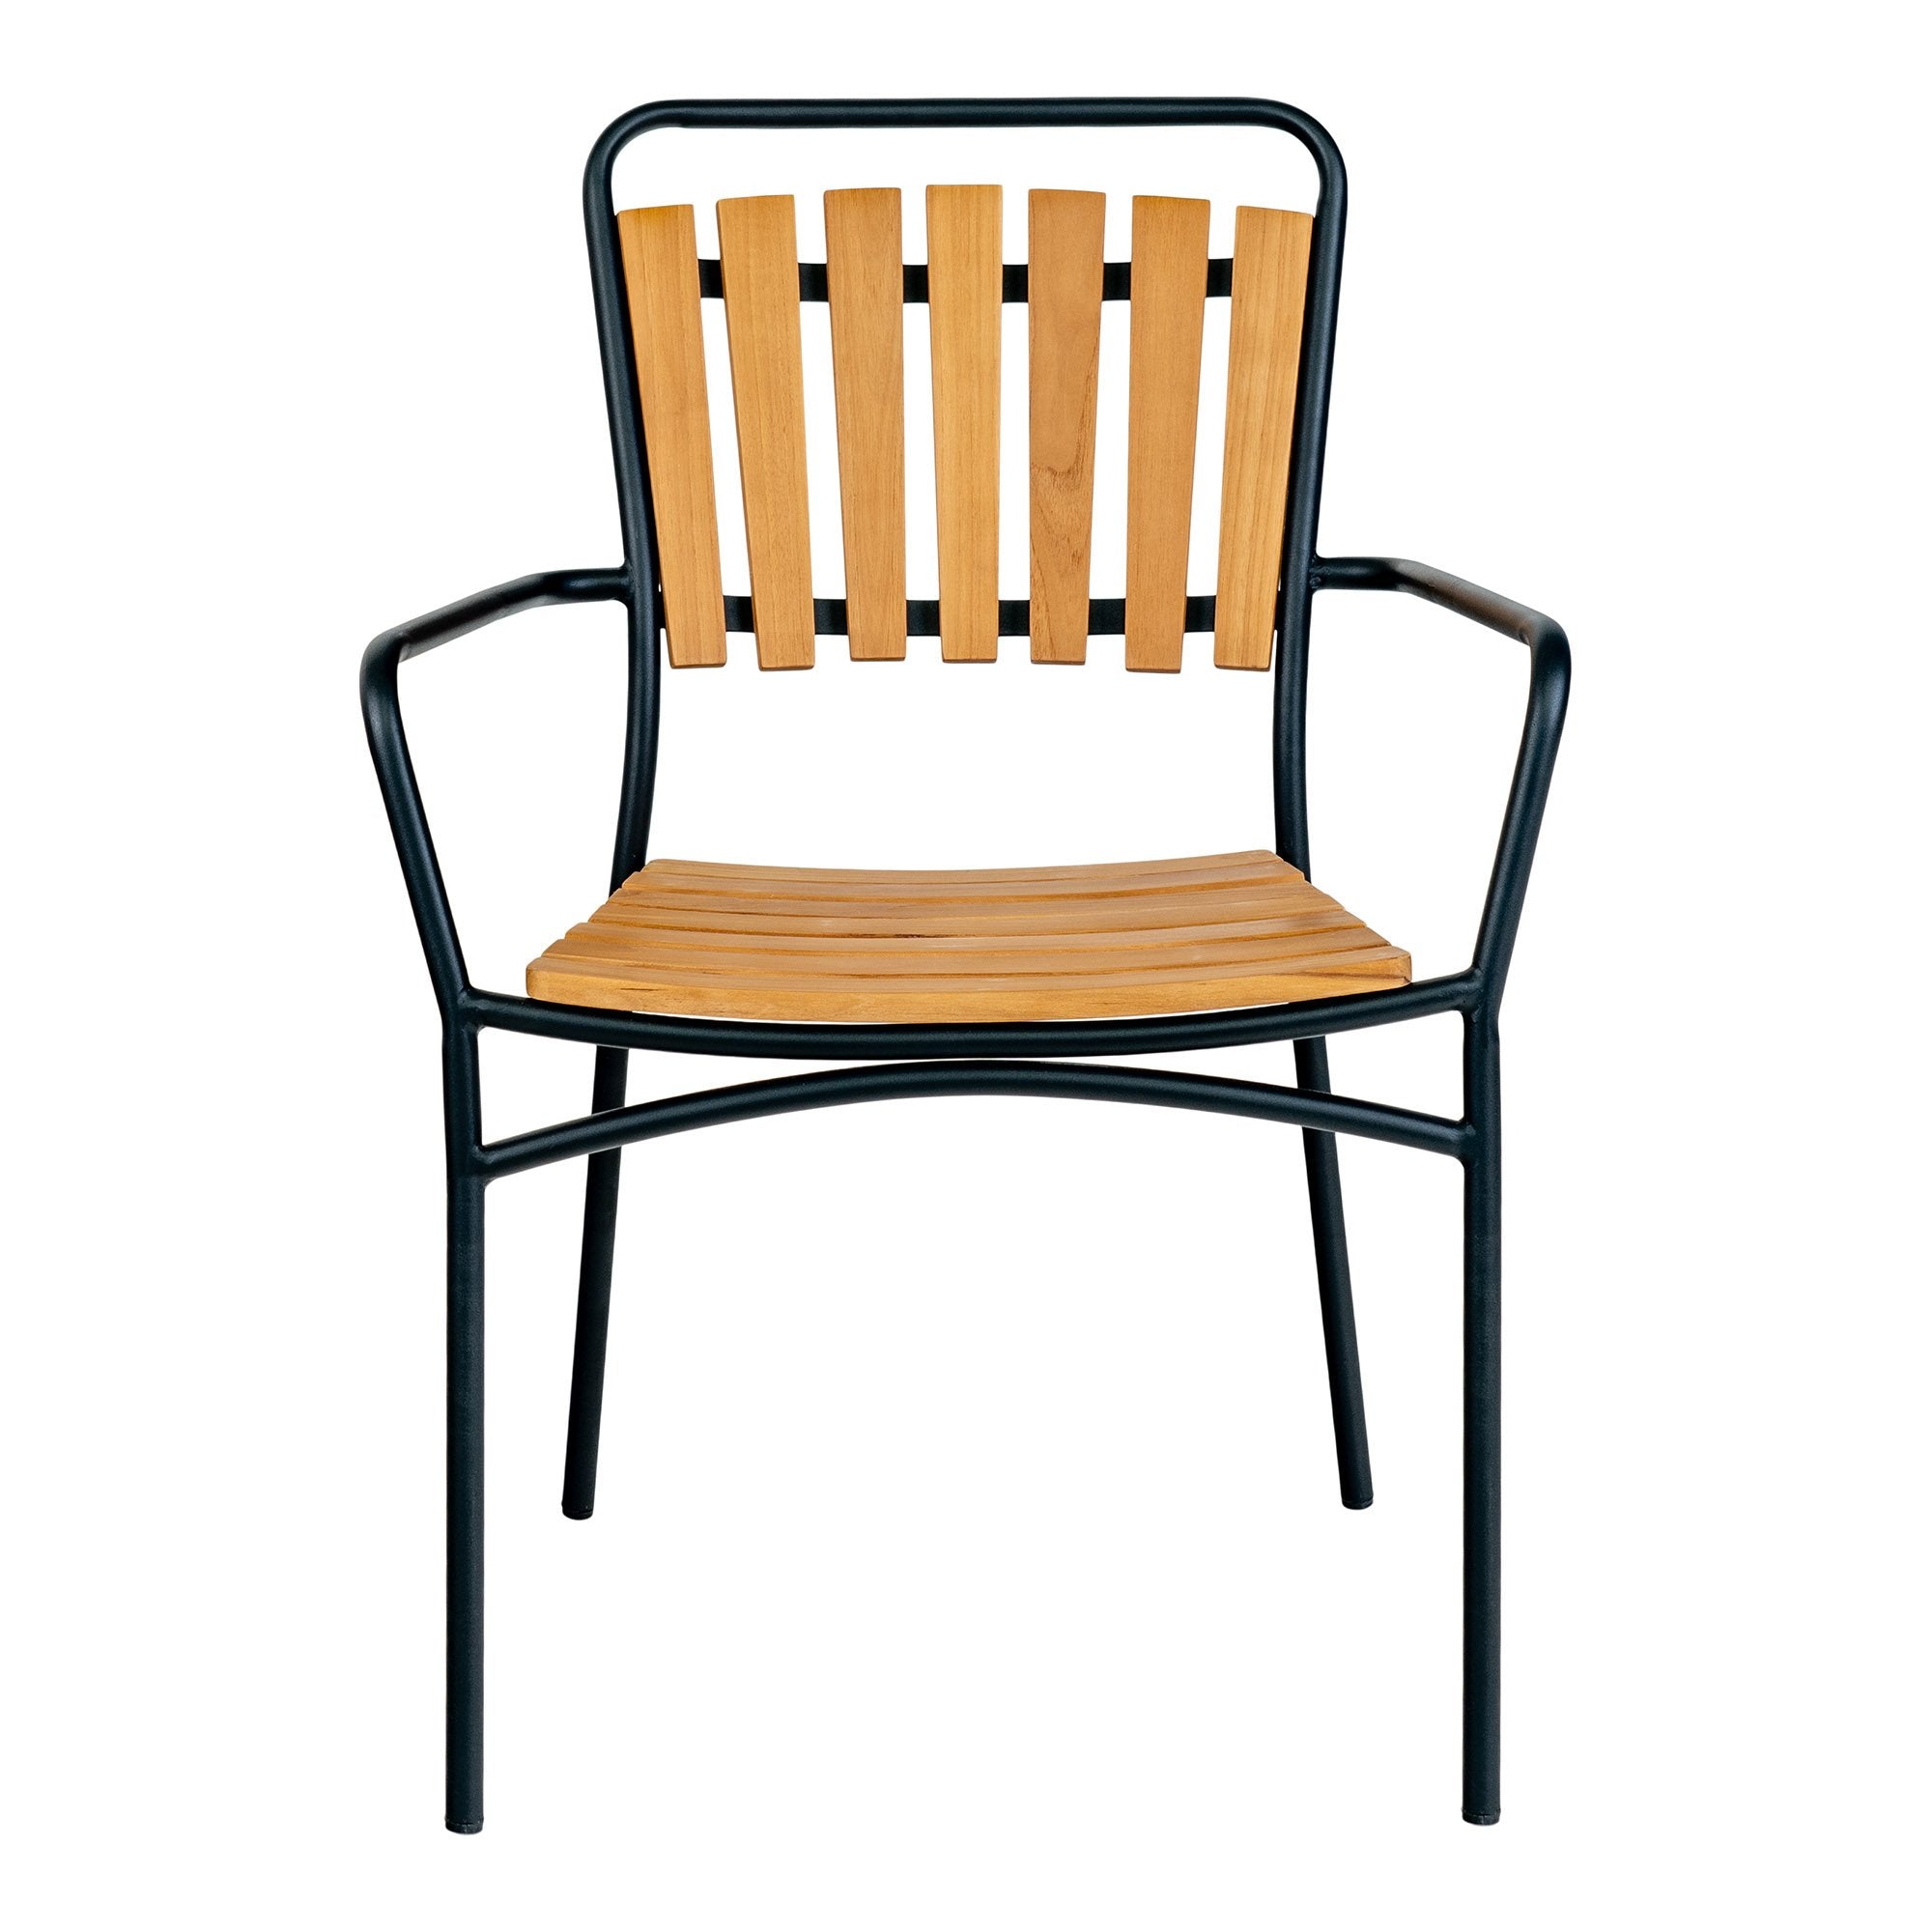 Cleveland Spisebordsstol - Spisebordsstol, Teak Med Sort Stel ⎮ Sæt af 4 stk. ⎮ 5713917026265 ⎮ 7801170 